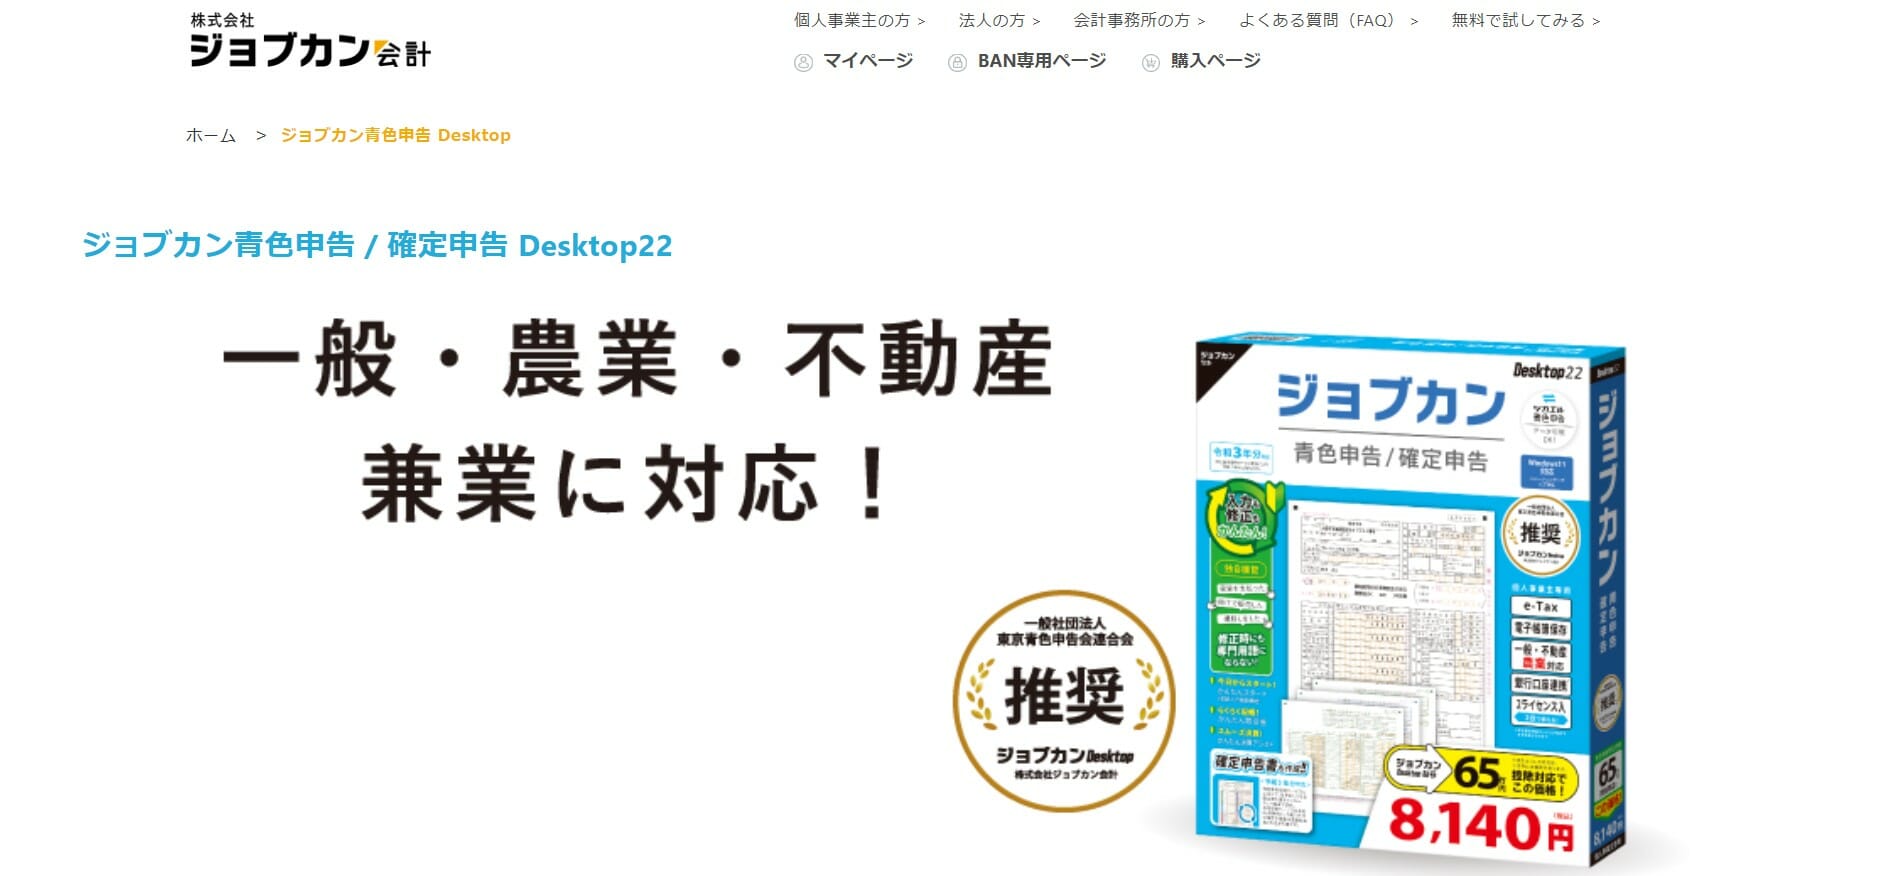 25848円 正規逆輸入品 最新版ジョブカン会計 Desktop22 経理